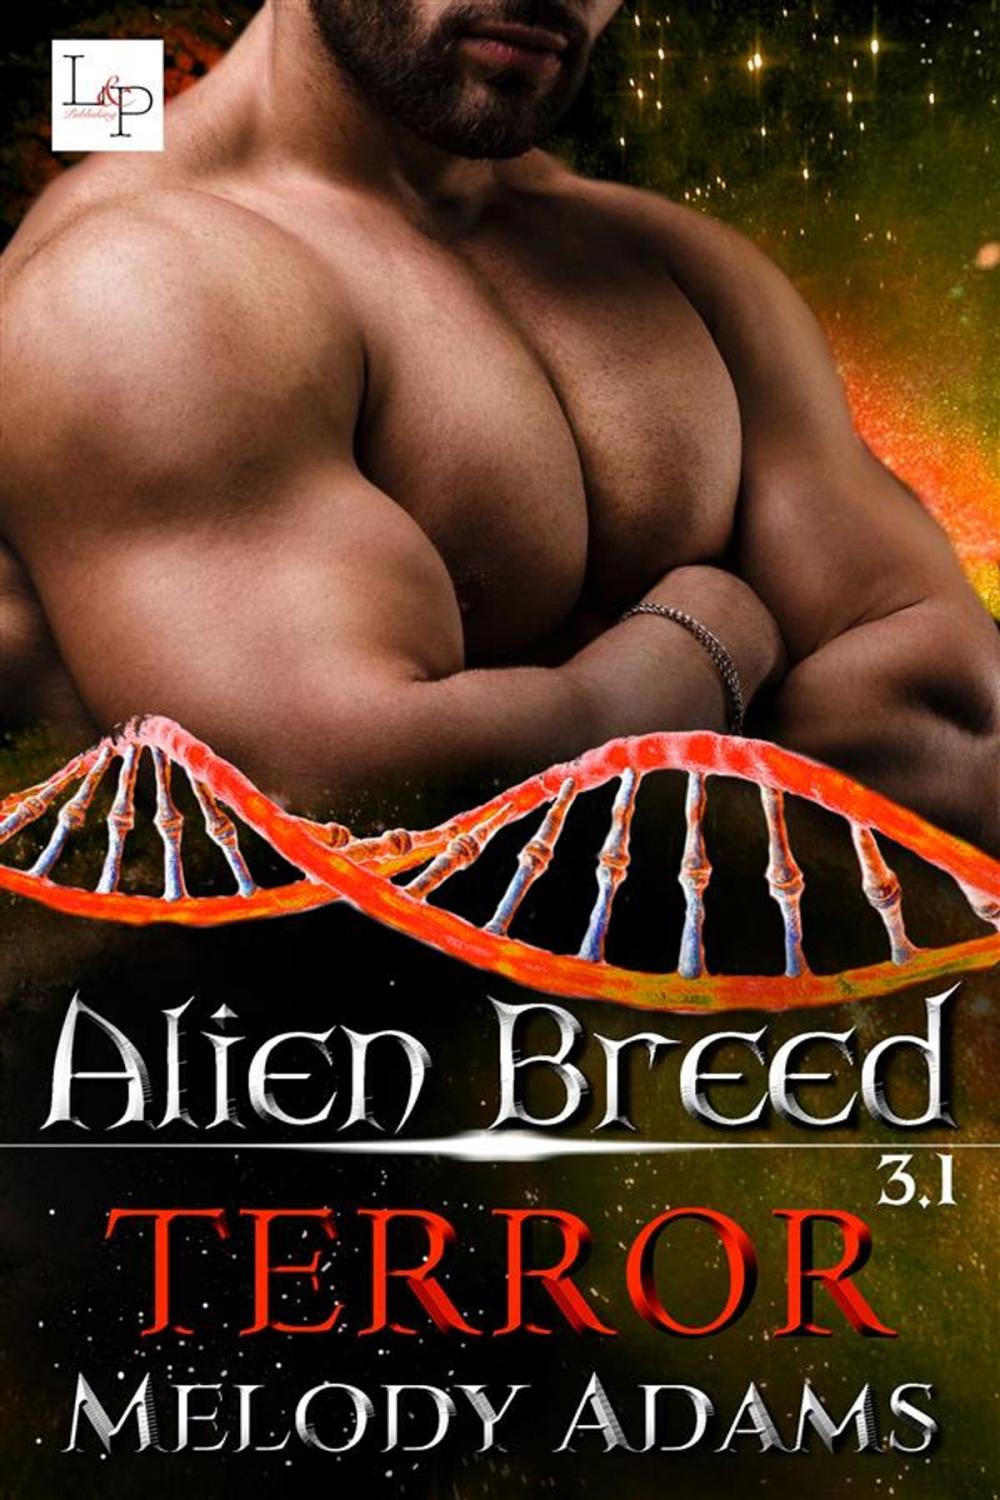 Big bigCover of Terror - Alien Breed 9.1